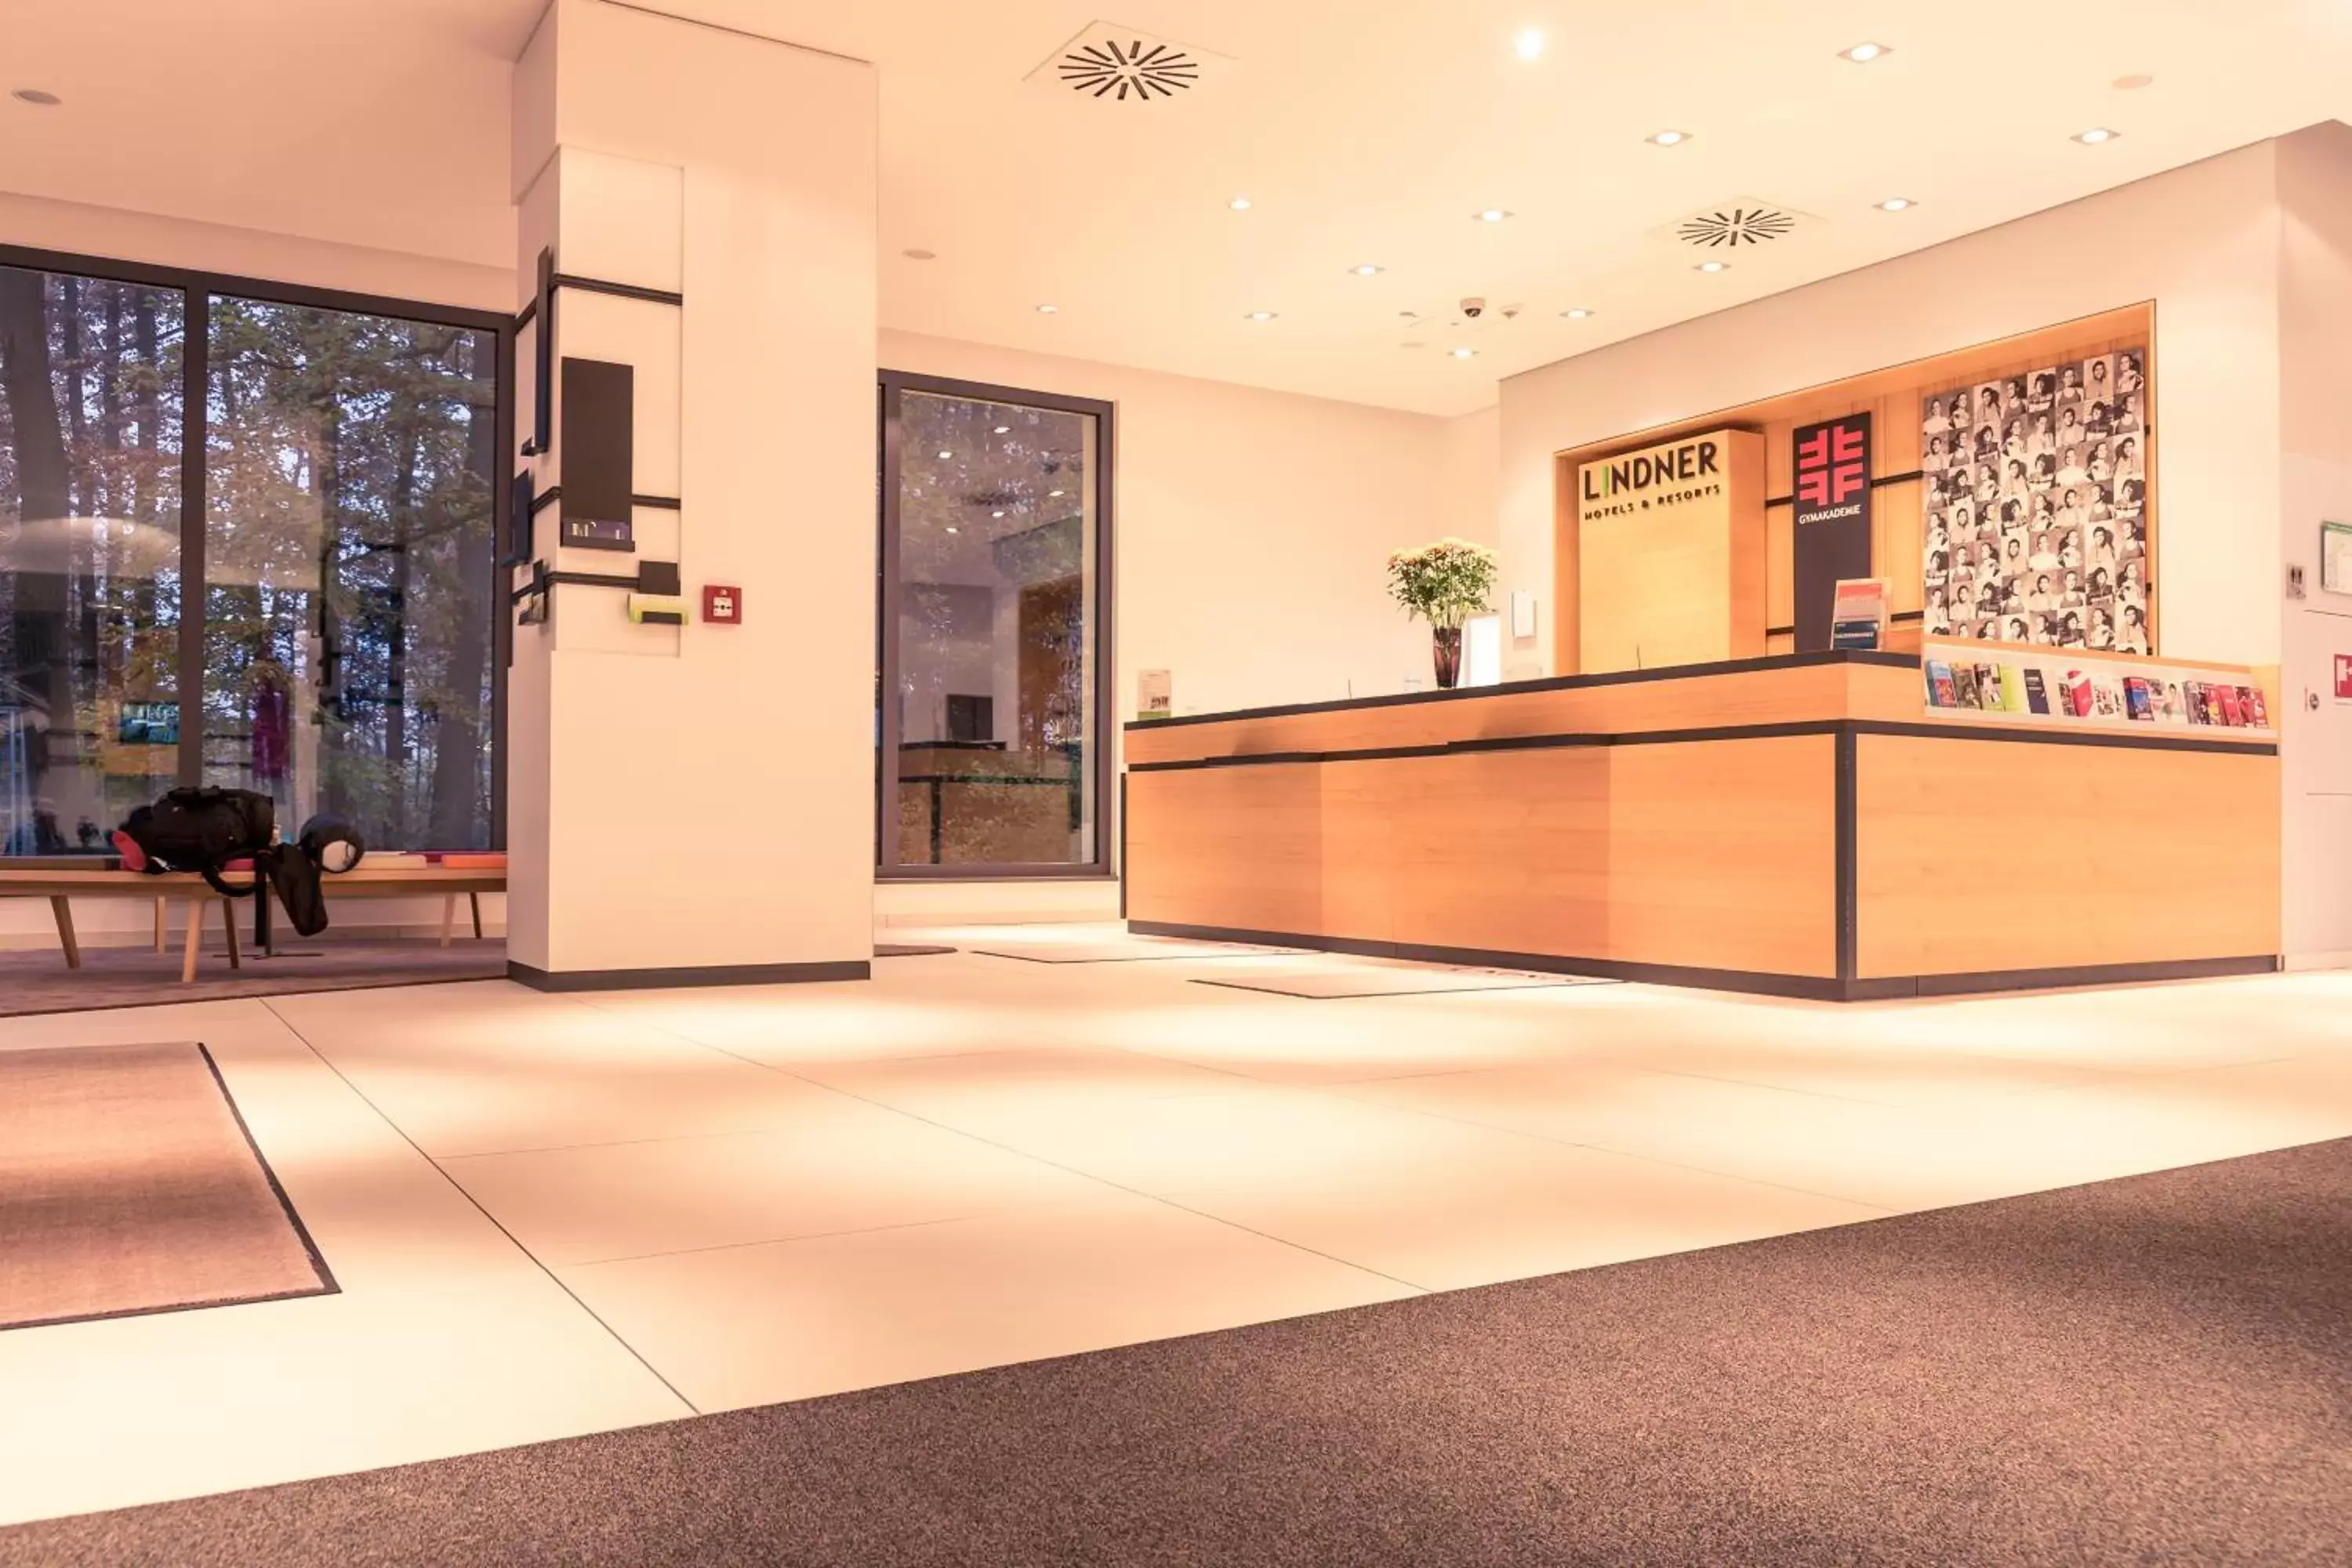 Lobby or reception, Lobby/Reception in Lindner Hotel Frankfurt Sportpark part of JdV by Hyatt